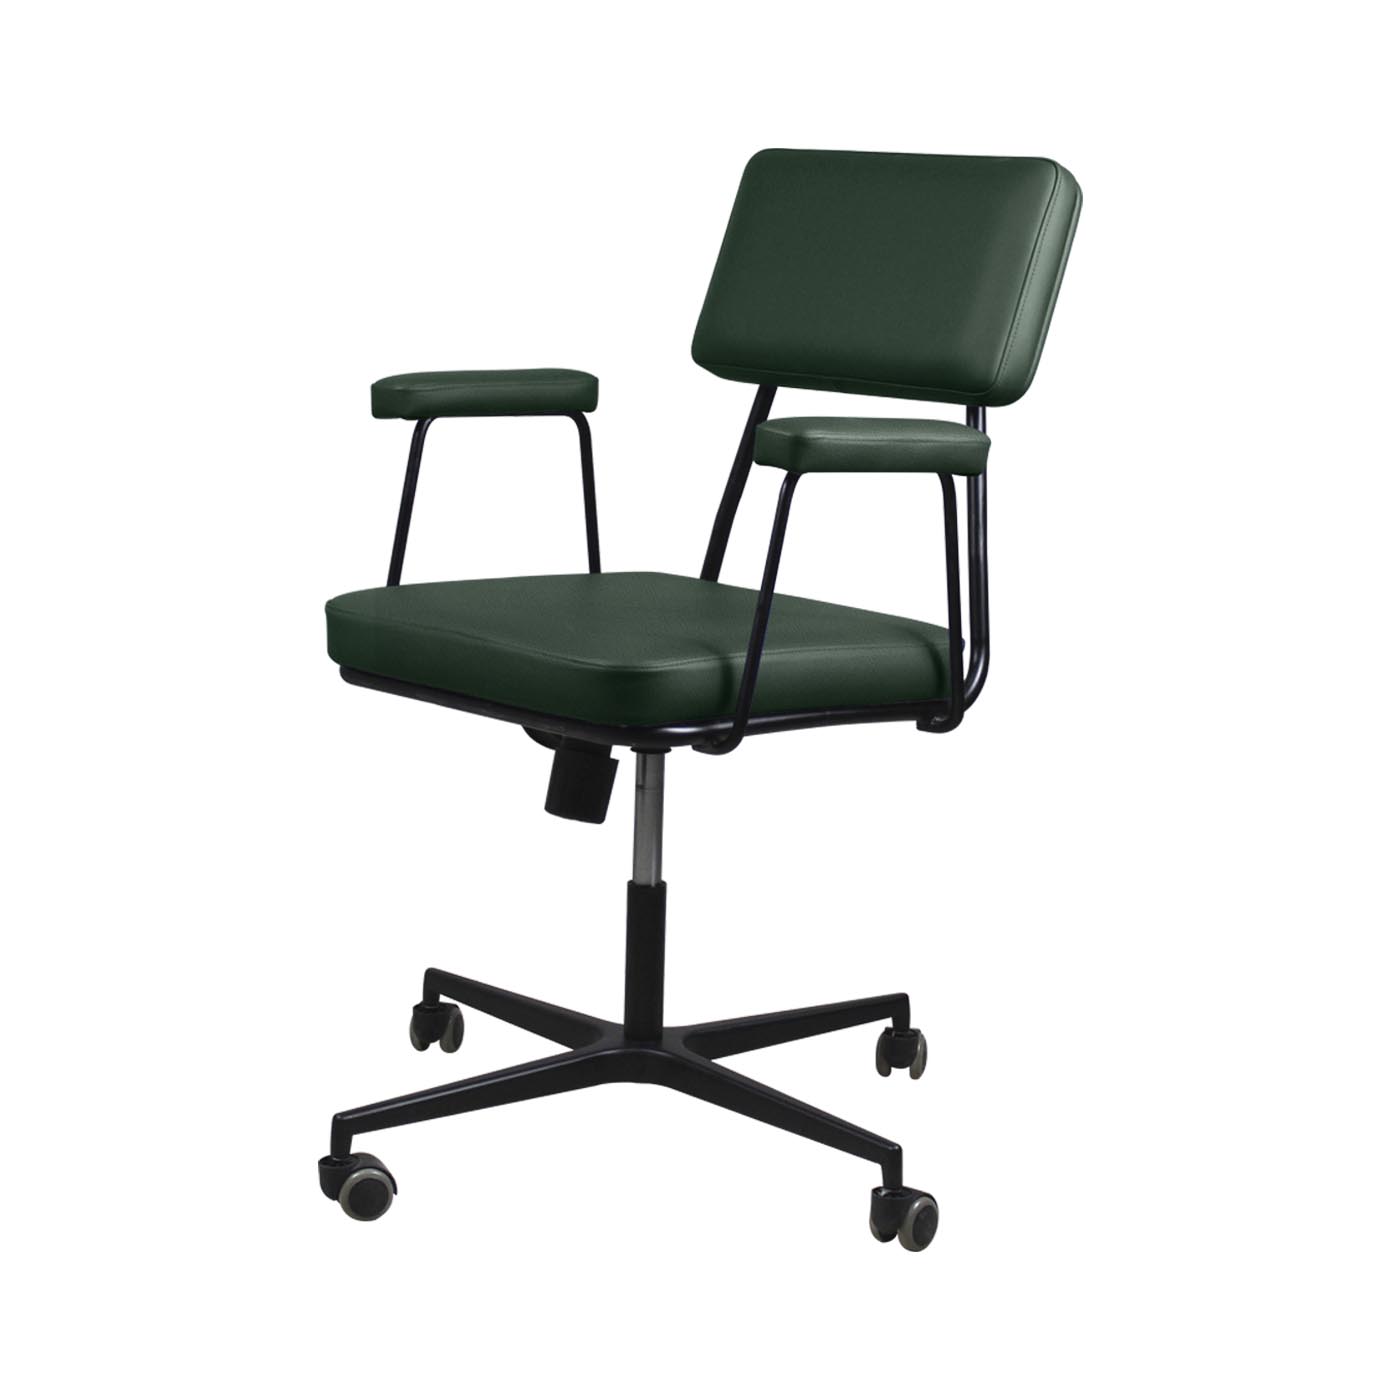 Noblitt Green Work Chair